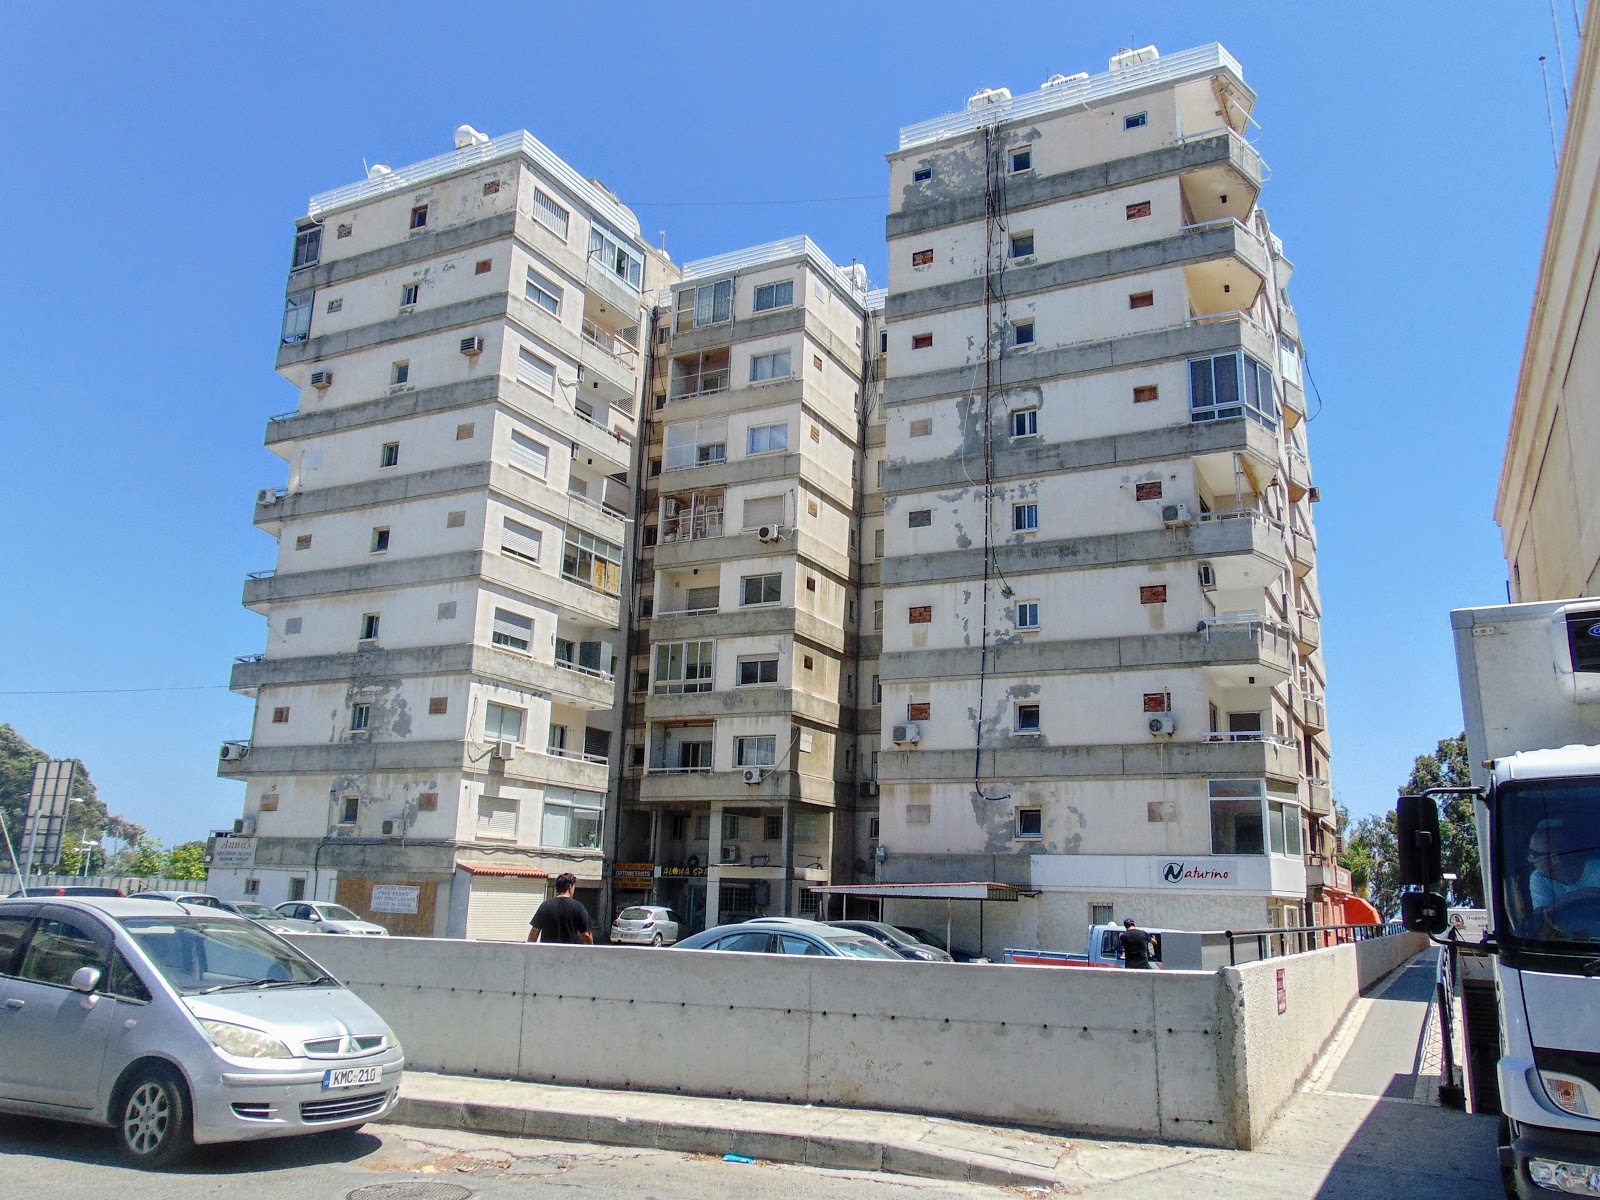 Эпоха Лимассола 80-х продолжает уходить. Впервые многоэтажный жилой дом в Неаполисе пойдёт под снос!: фото 3